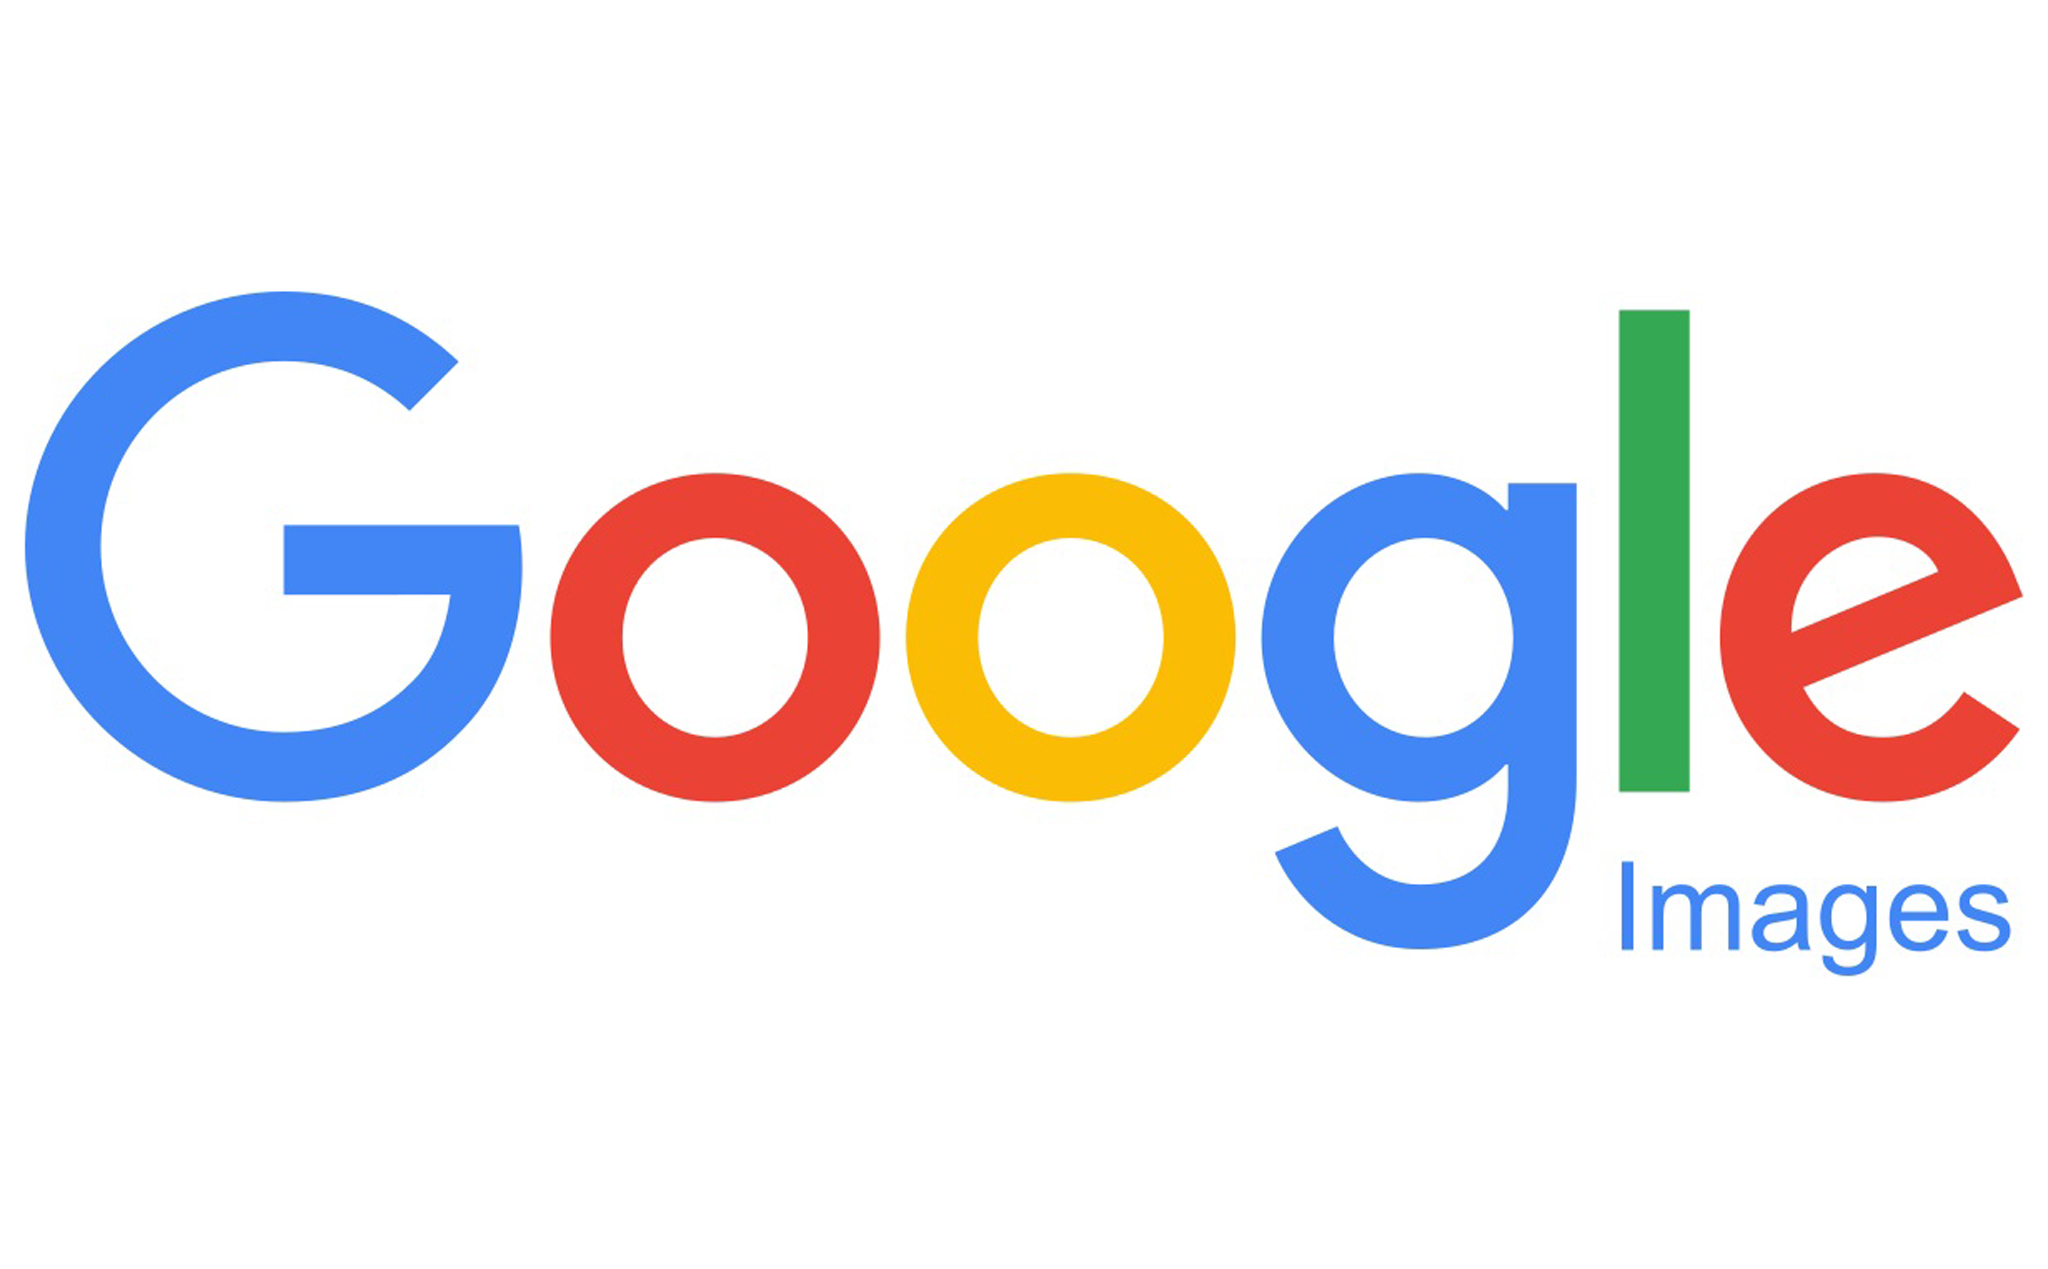 Săn lùng Google Pixel để tải ảnh Google Photos miễn phí